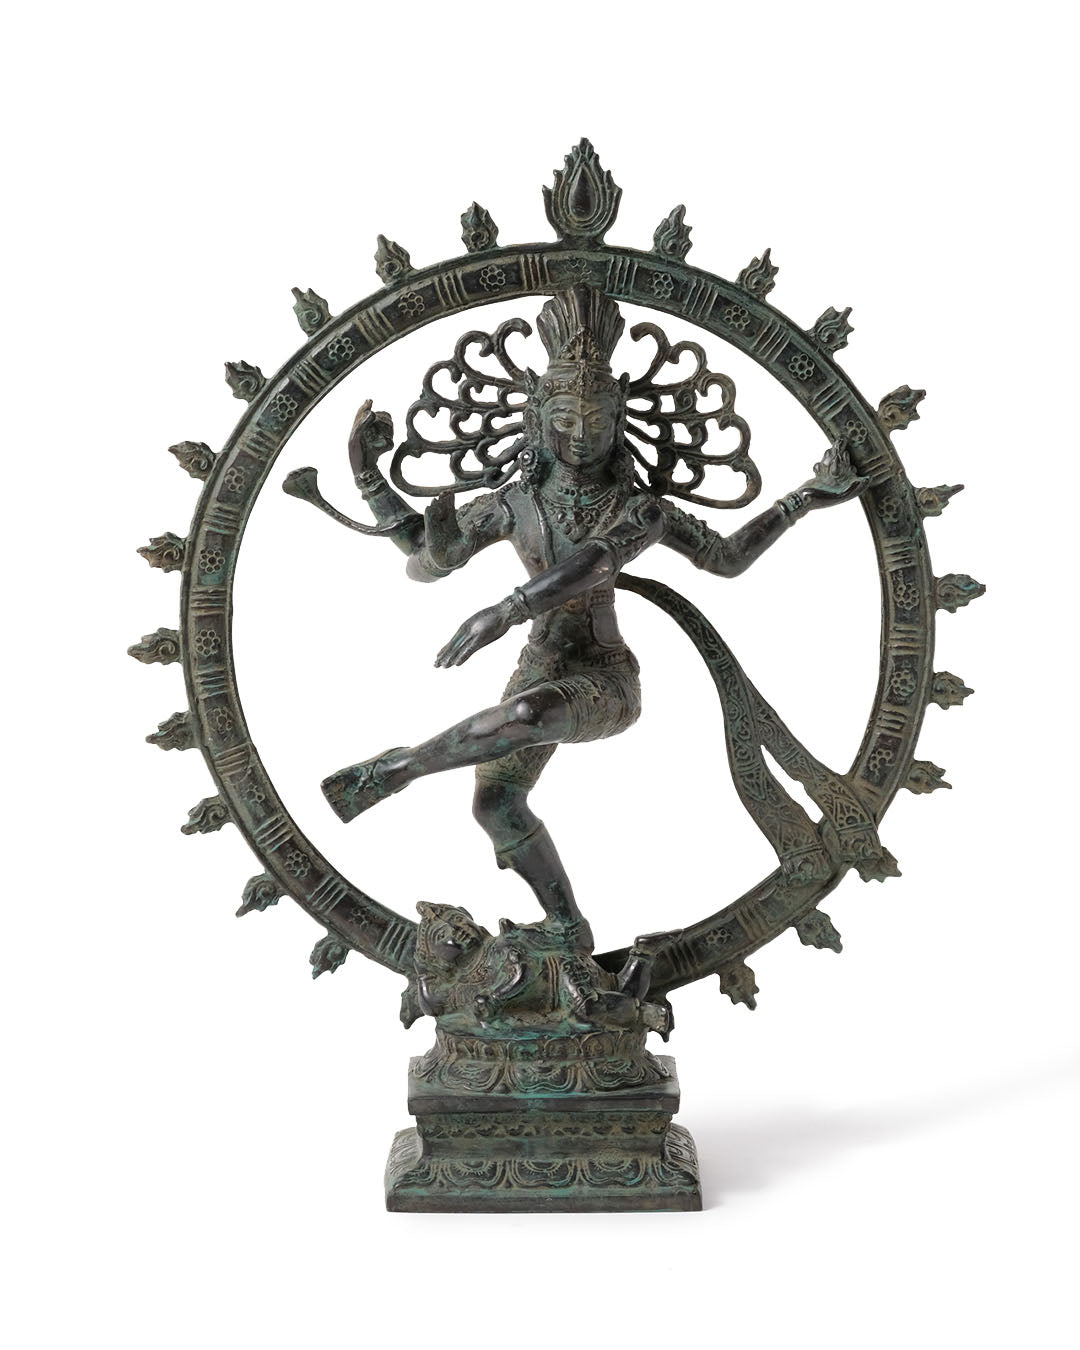 Estatua 100% de bronce  Shiva danzante decorativa de 34 cm de altura, acabado opaco o dorado brillante, hecho a mano por artesanos,  fabricado en Indonesia